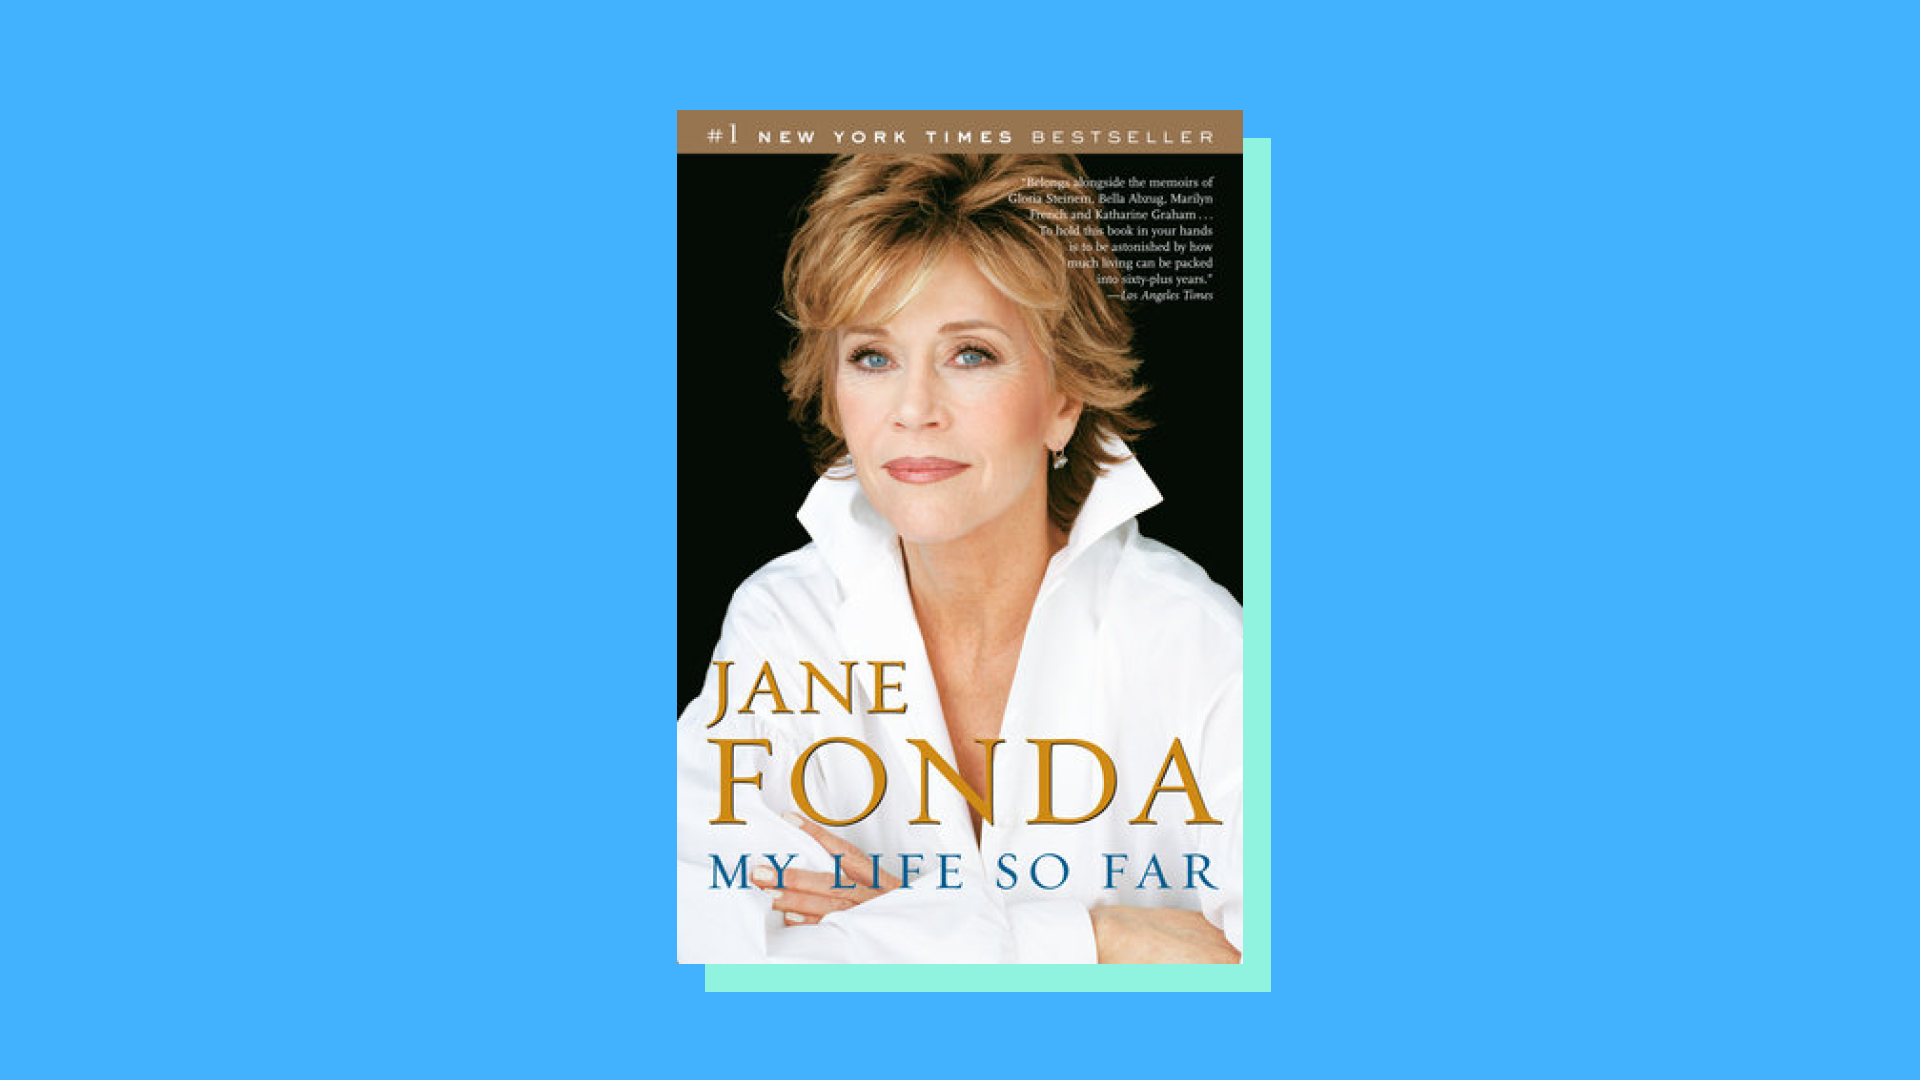 “My Life So Far” by Jane Fonda